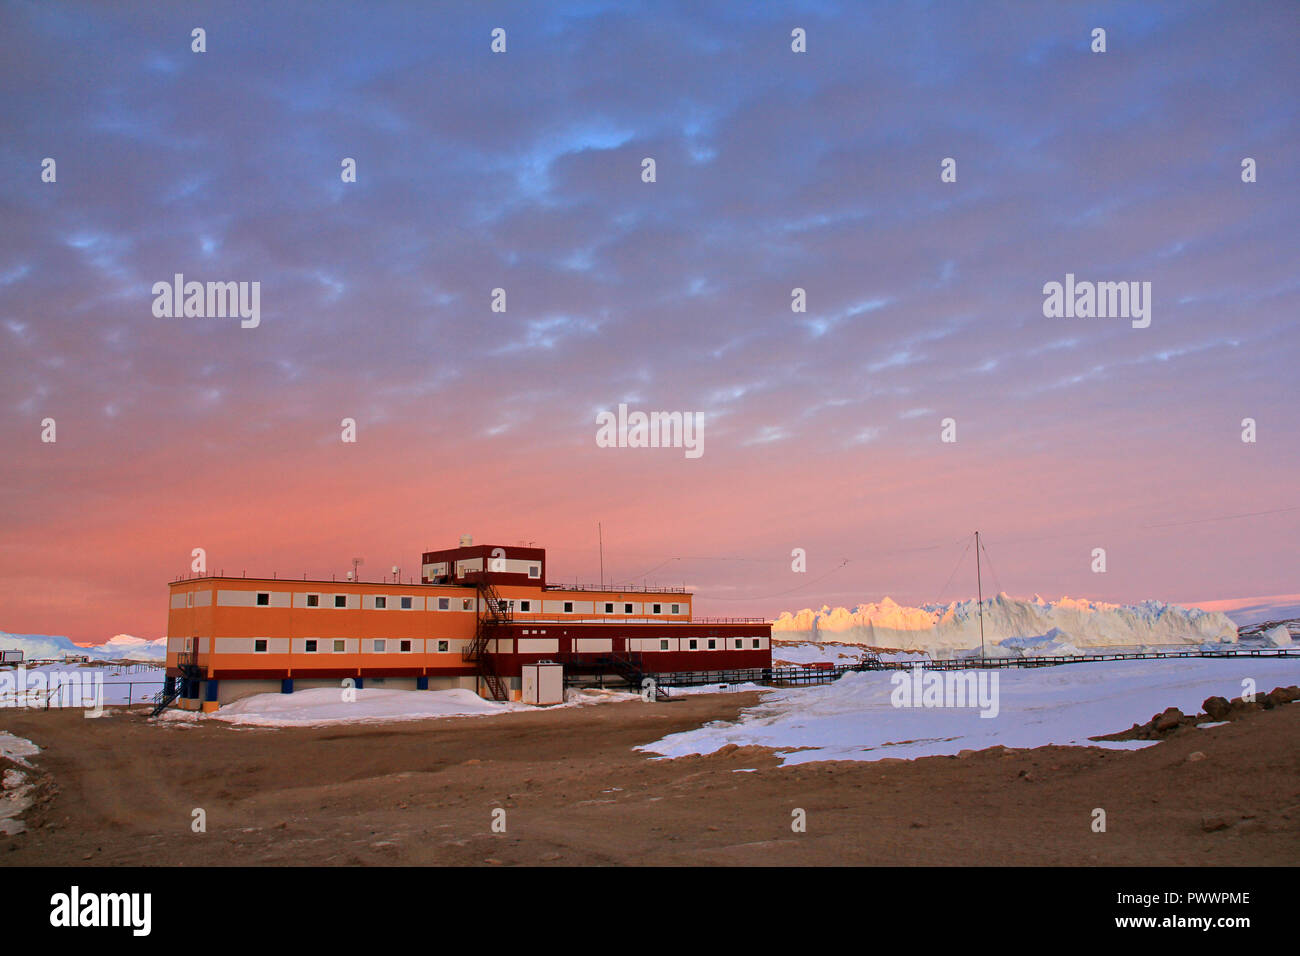 Fortschritte Station, Antarktis Januar 04, 2017: Panorama und nur Luft. Blick auf das Meer, Eisberge und Polarstation, Gelände und Landschaft der Antarktis. S Stockfoto